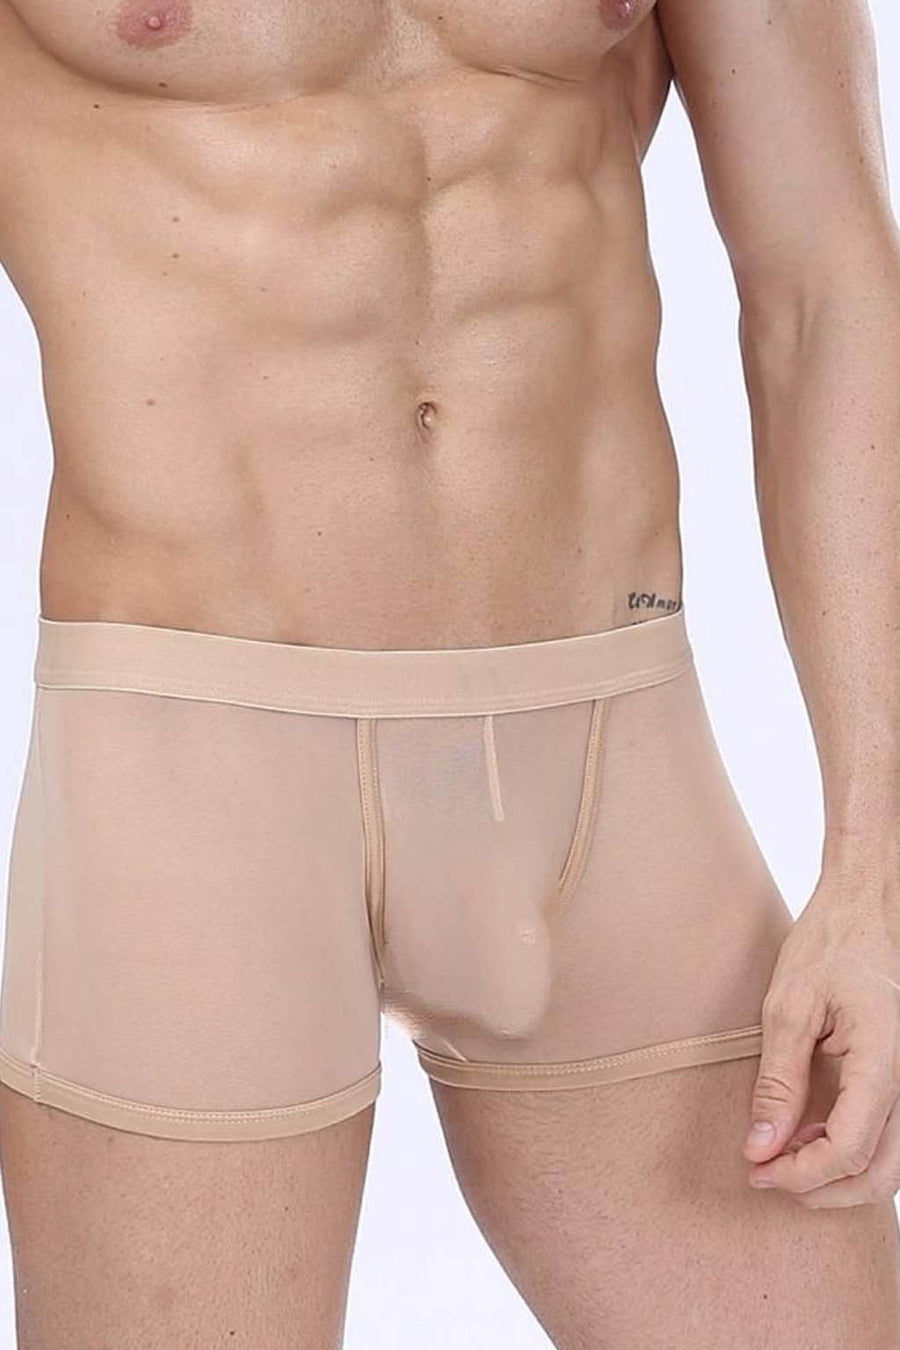 Manview Mens Sheer Net Boxer Lowrise Pouch Underwear – Bodywear